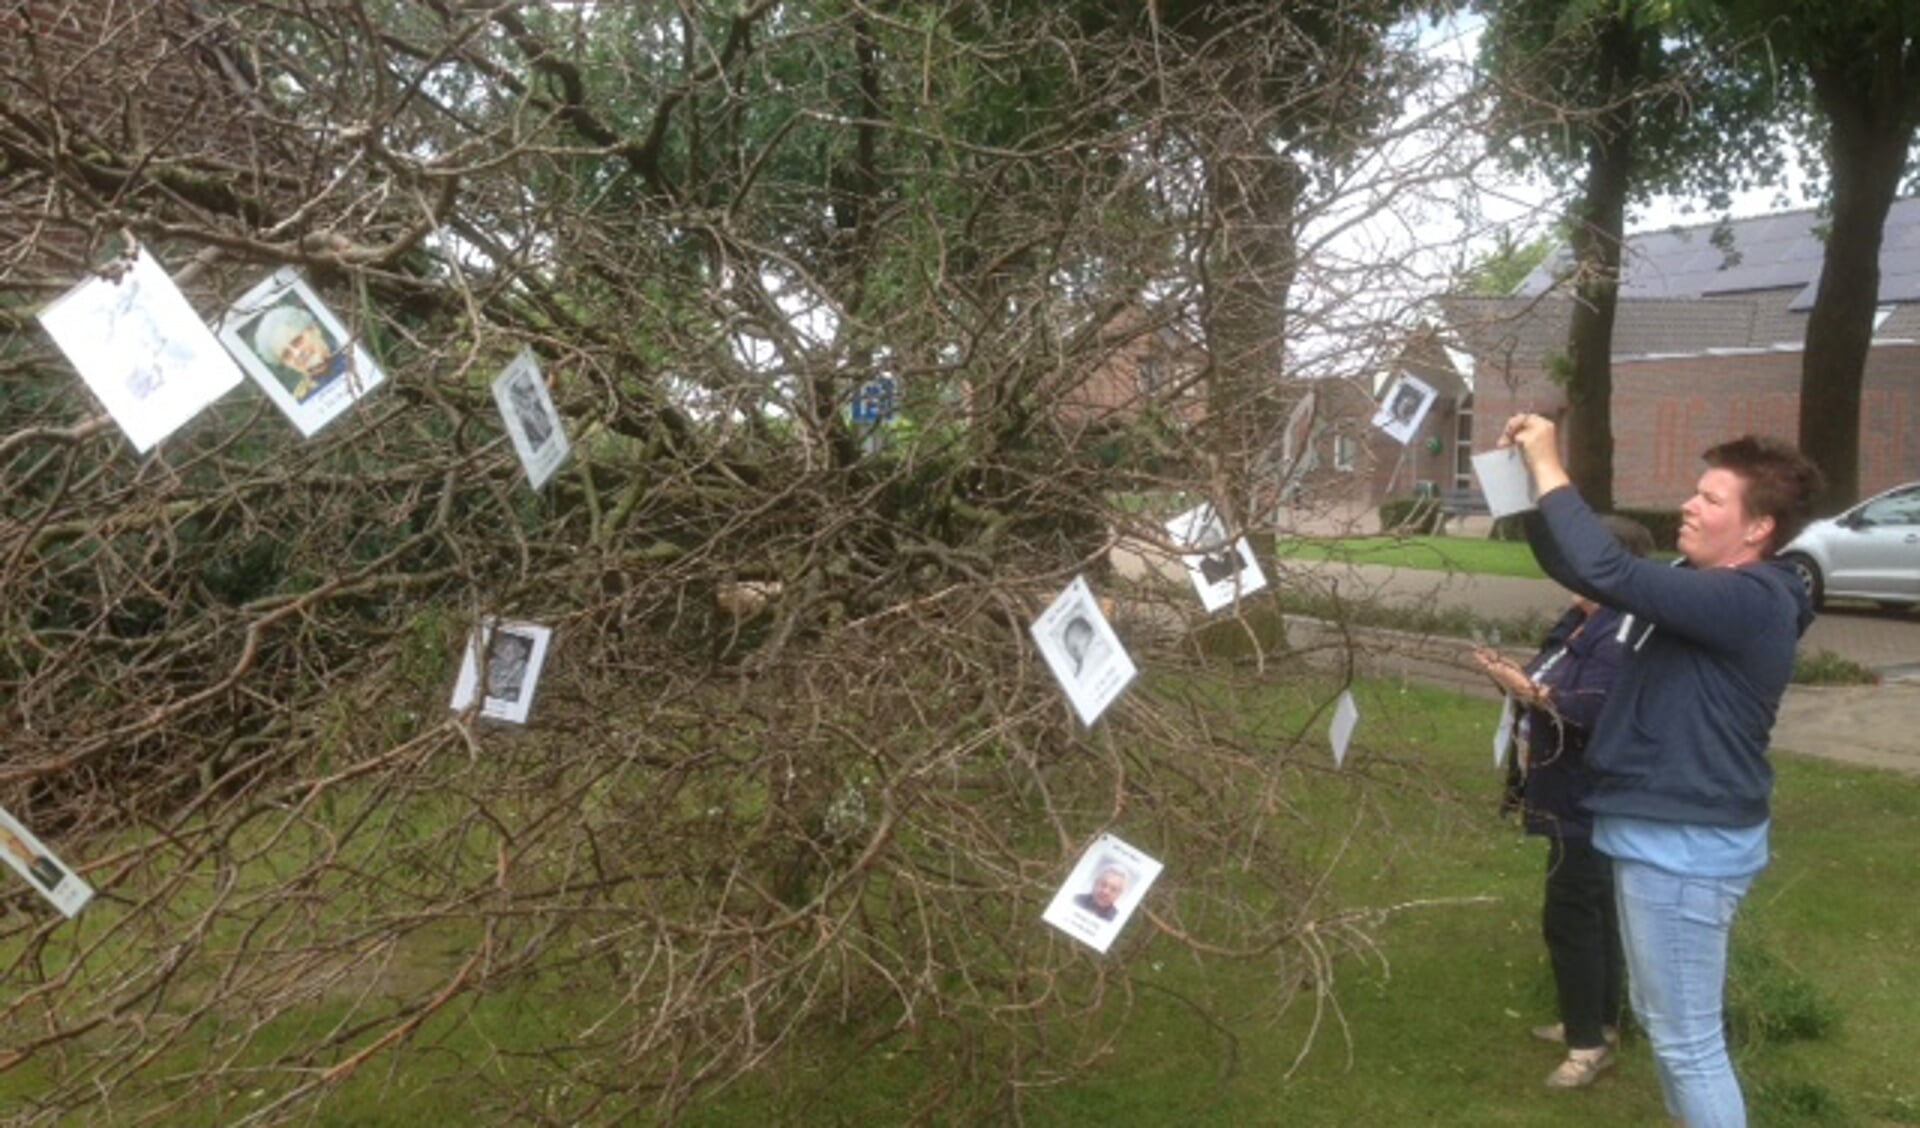 De bidprentjes worden in de herinneringsboom in hartje Veulen gehangen. Foto: Ron Koenen.